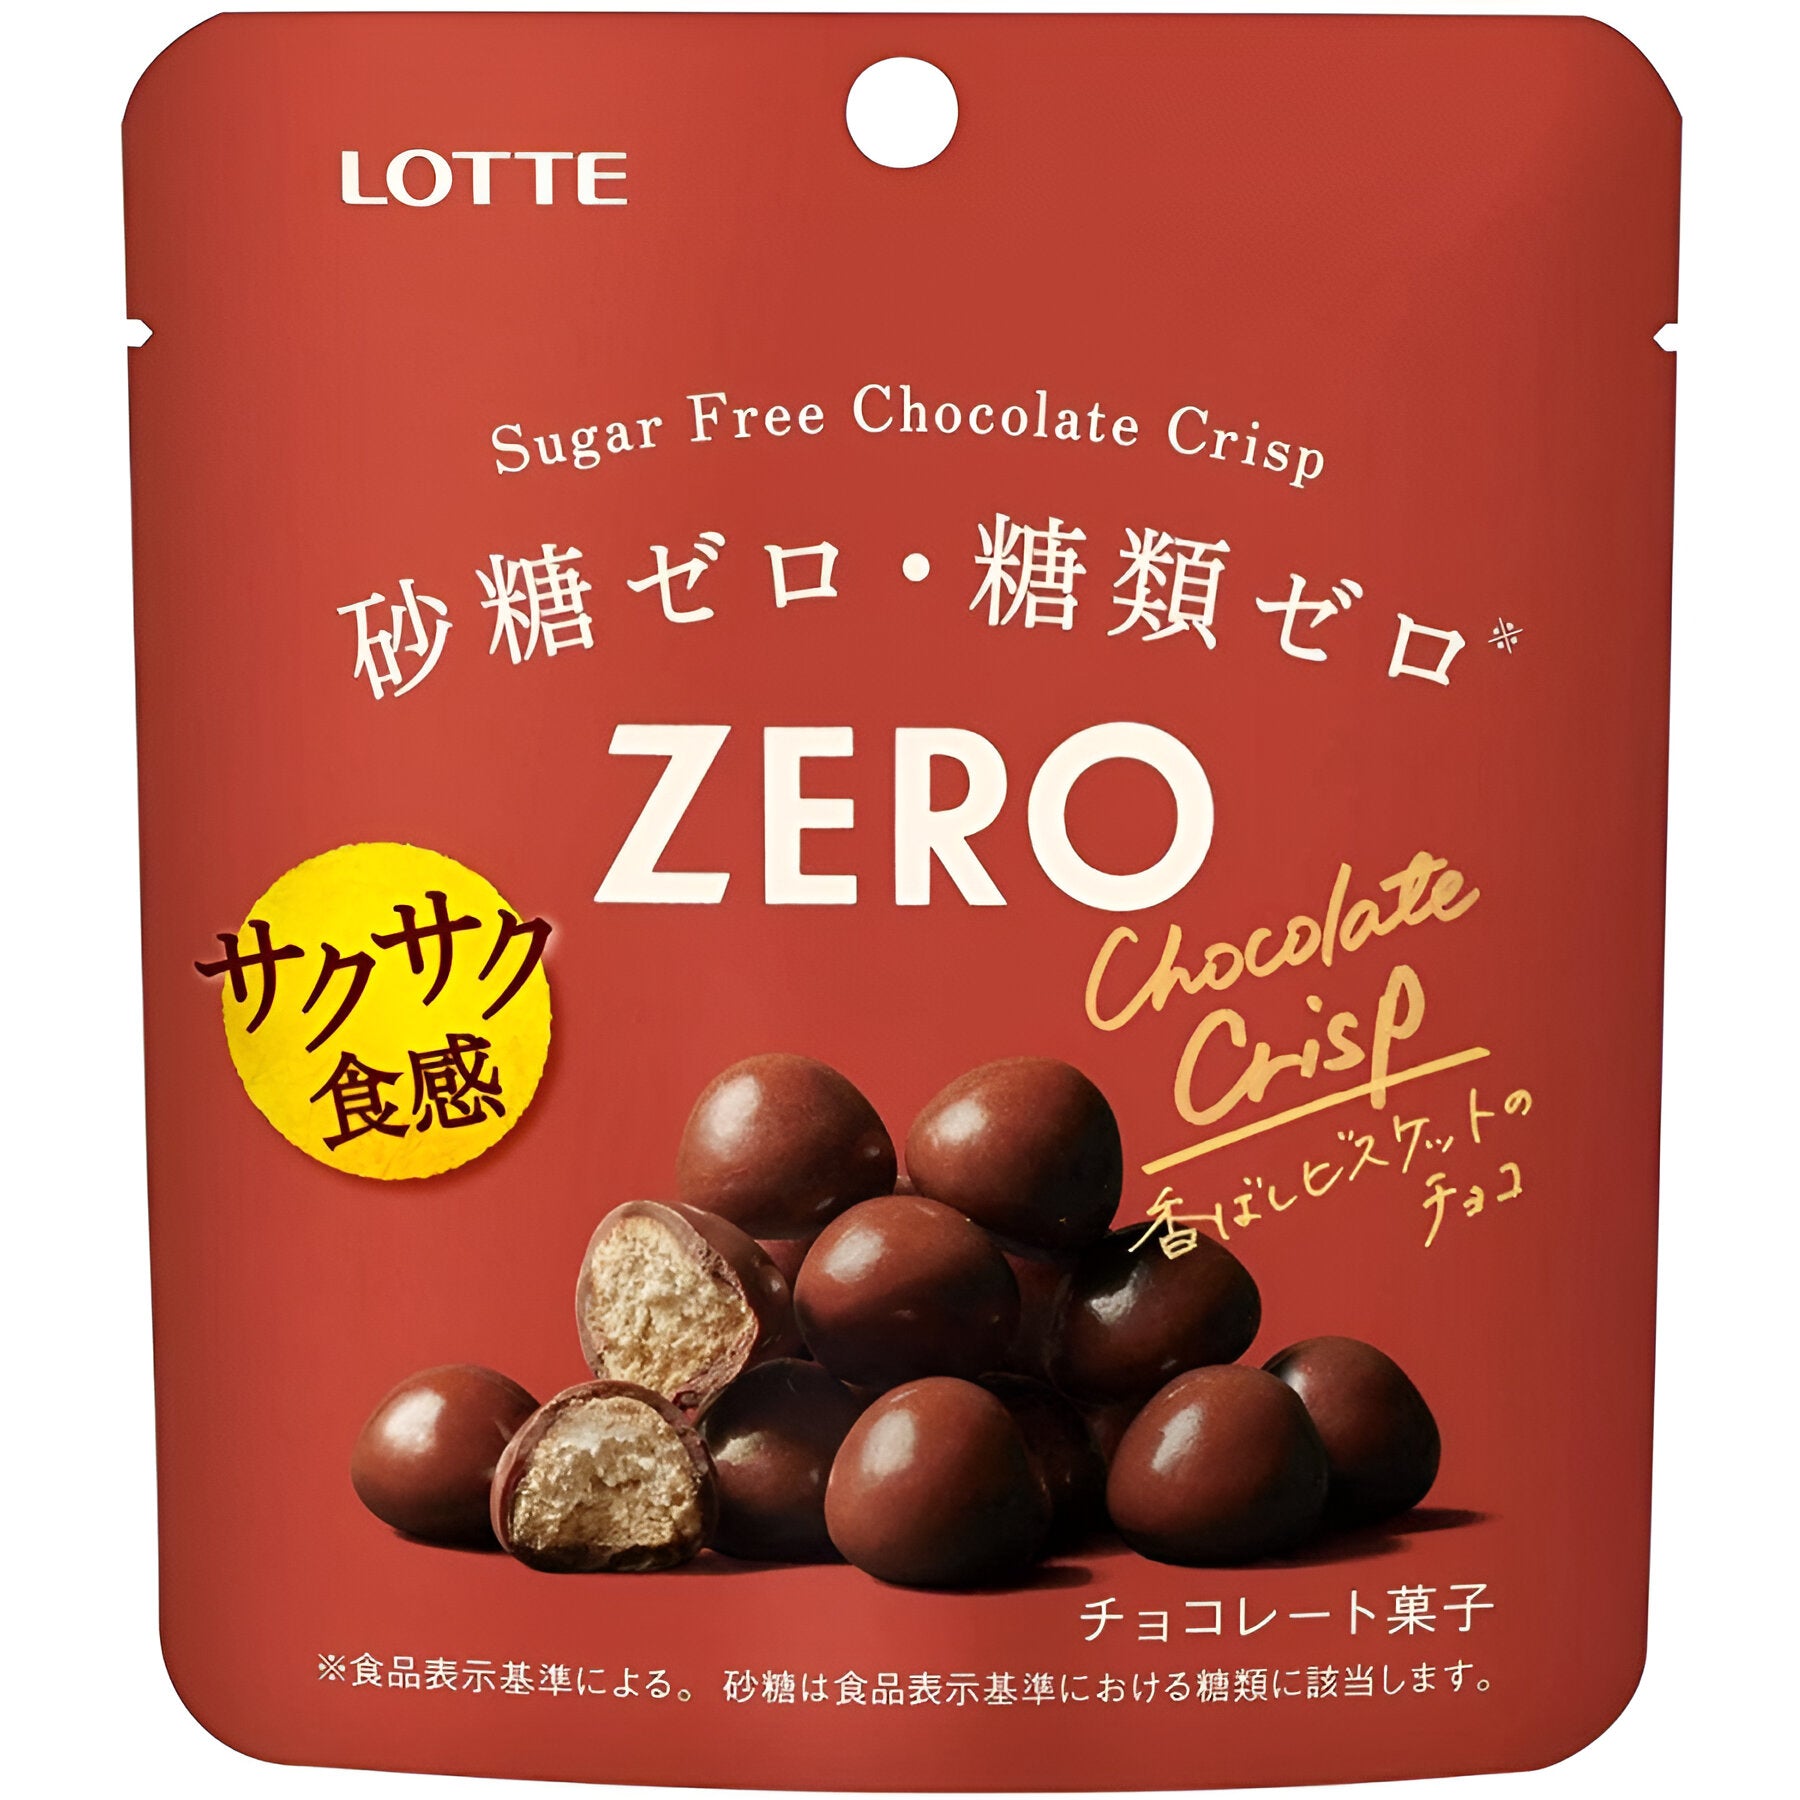 Zero Sugar Free Chocolate Crisp - 28G